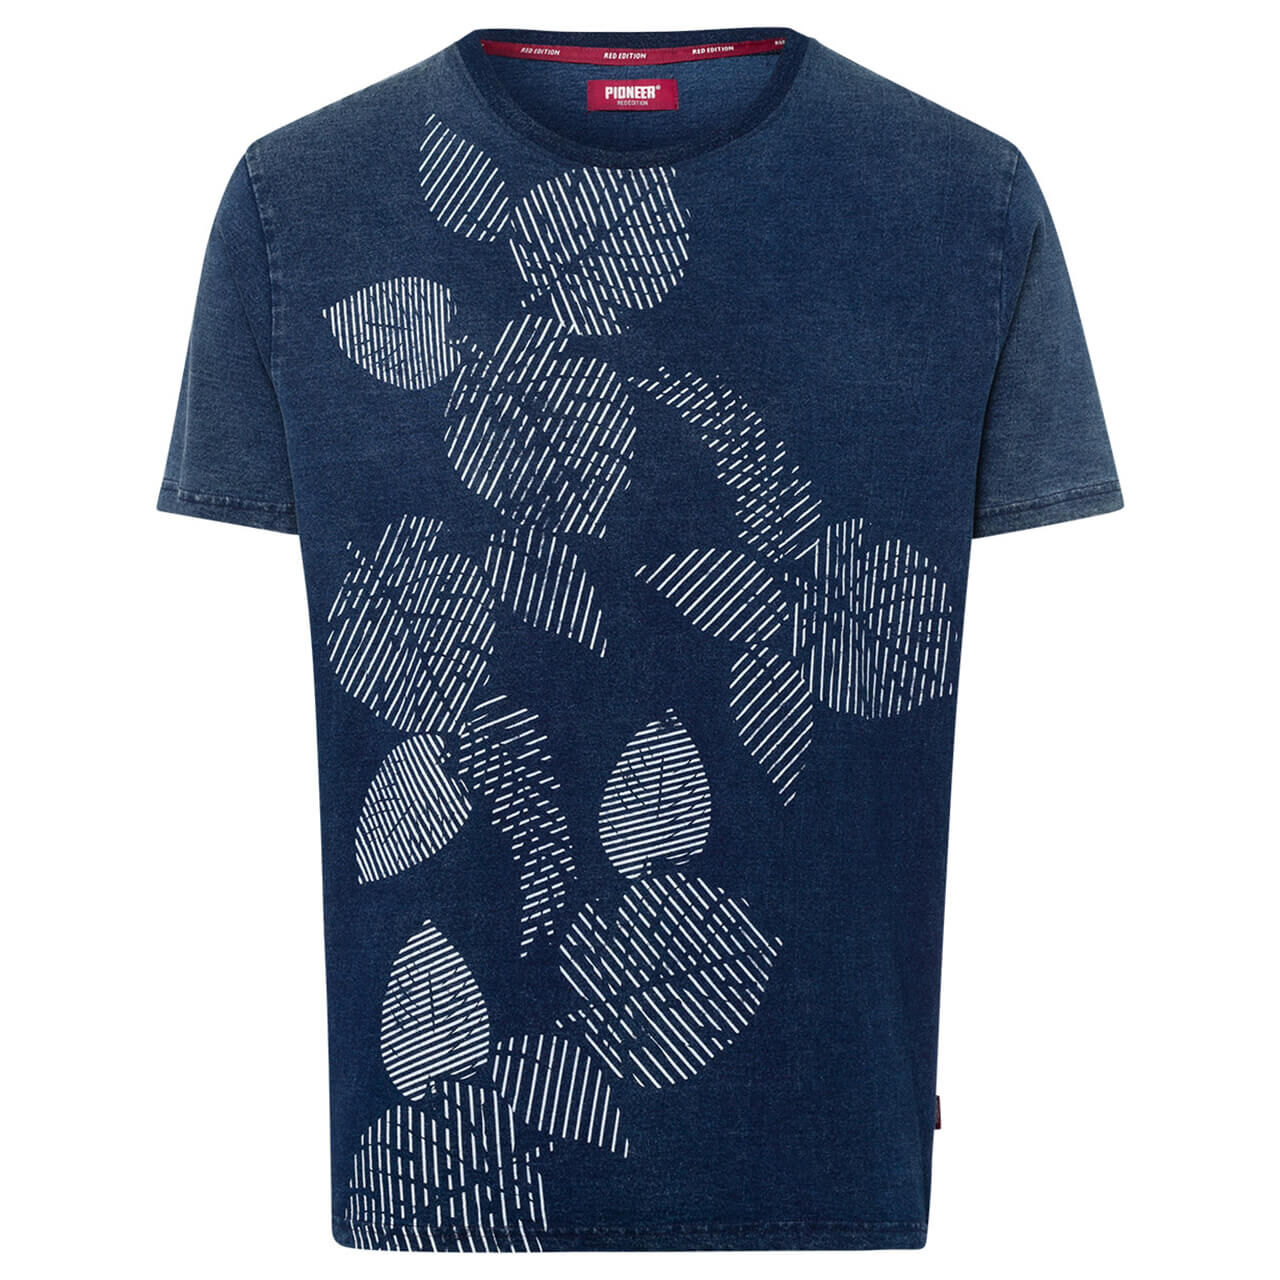 Pioneer T-Shirt für Herren in Dunkelblau mit Print, FarbNr.: 6864